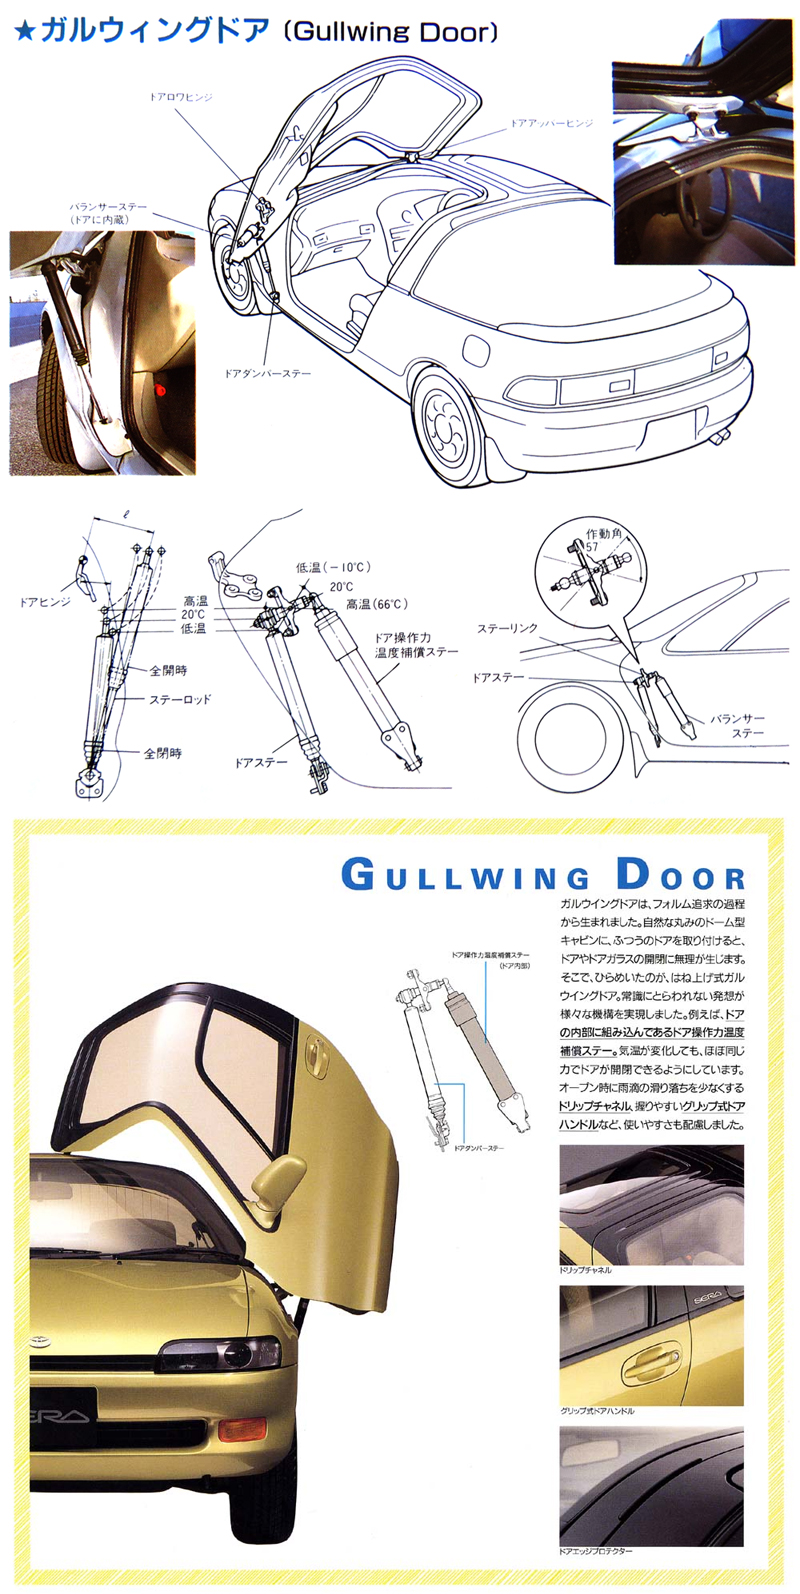 1990_Toyota_Sera_Gullwing_Door